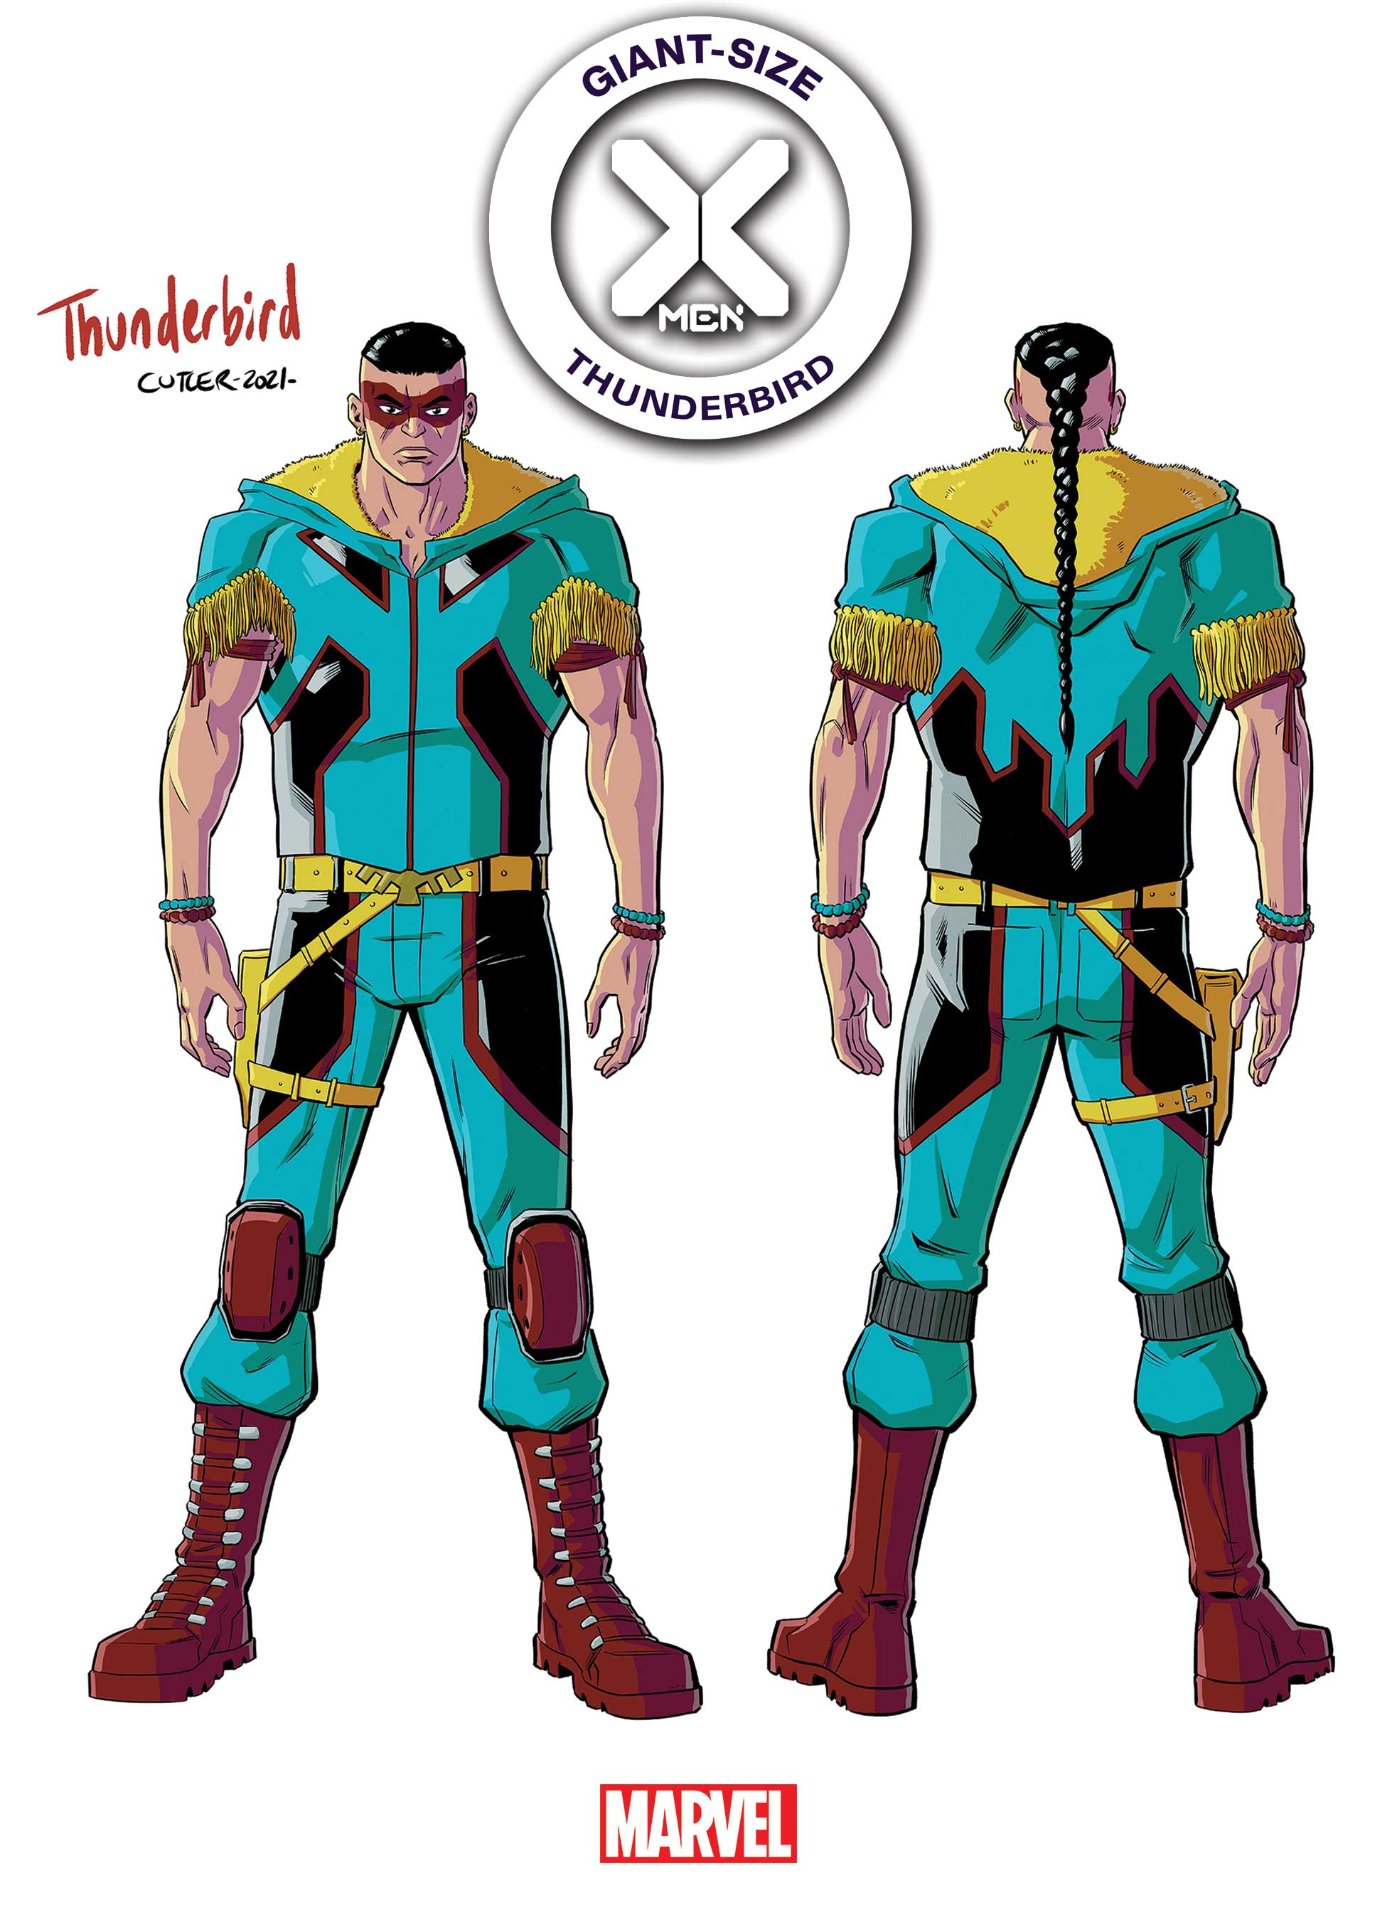 Giant-Size X-Men: Thunderbird #1 portada variante de diseño por David Cutler